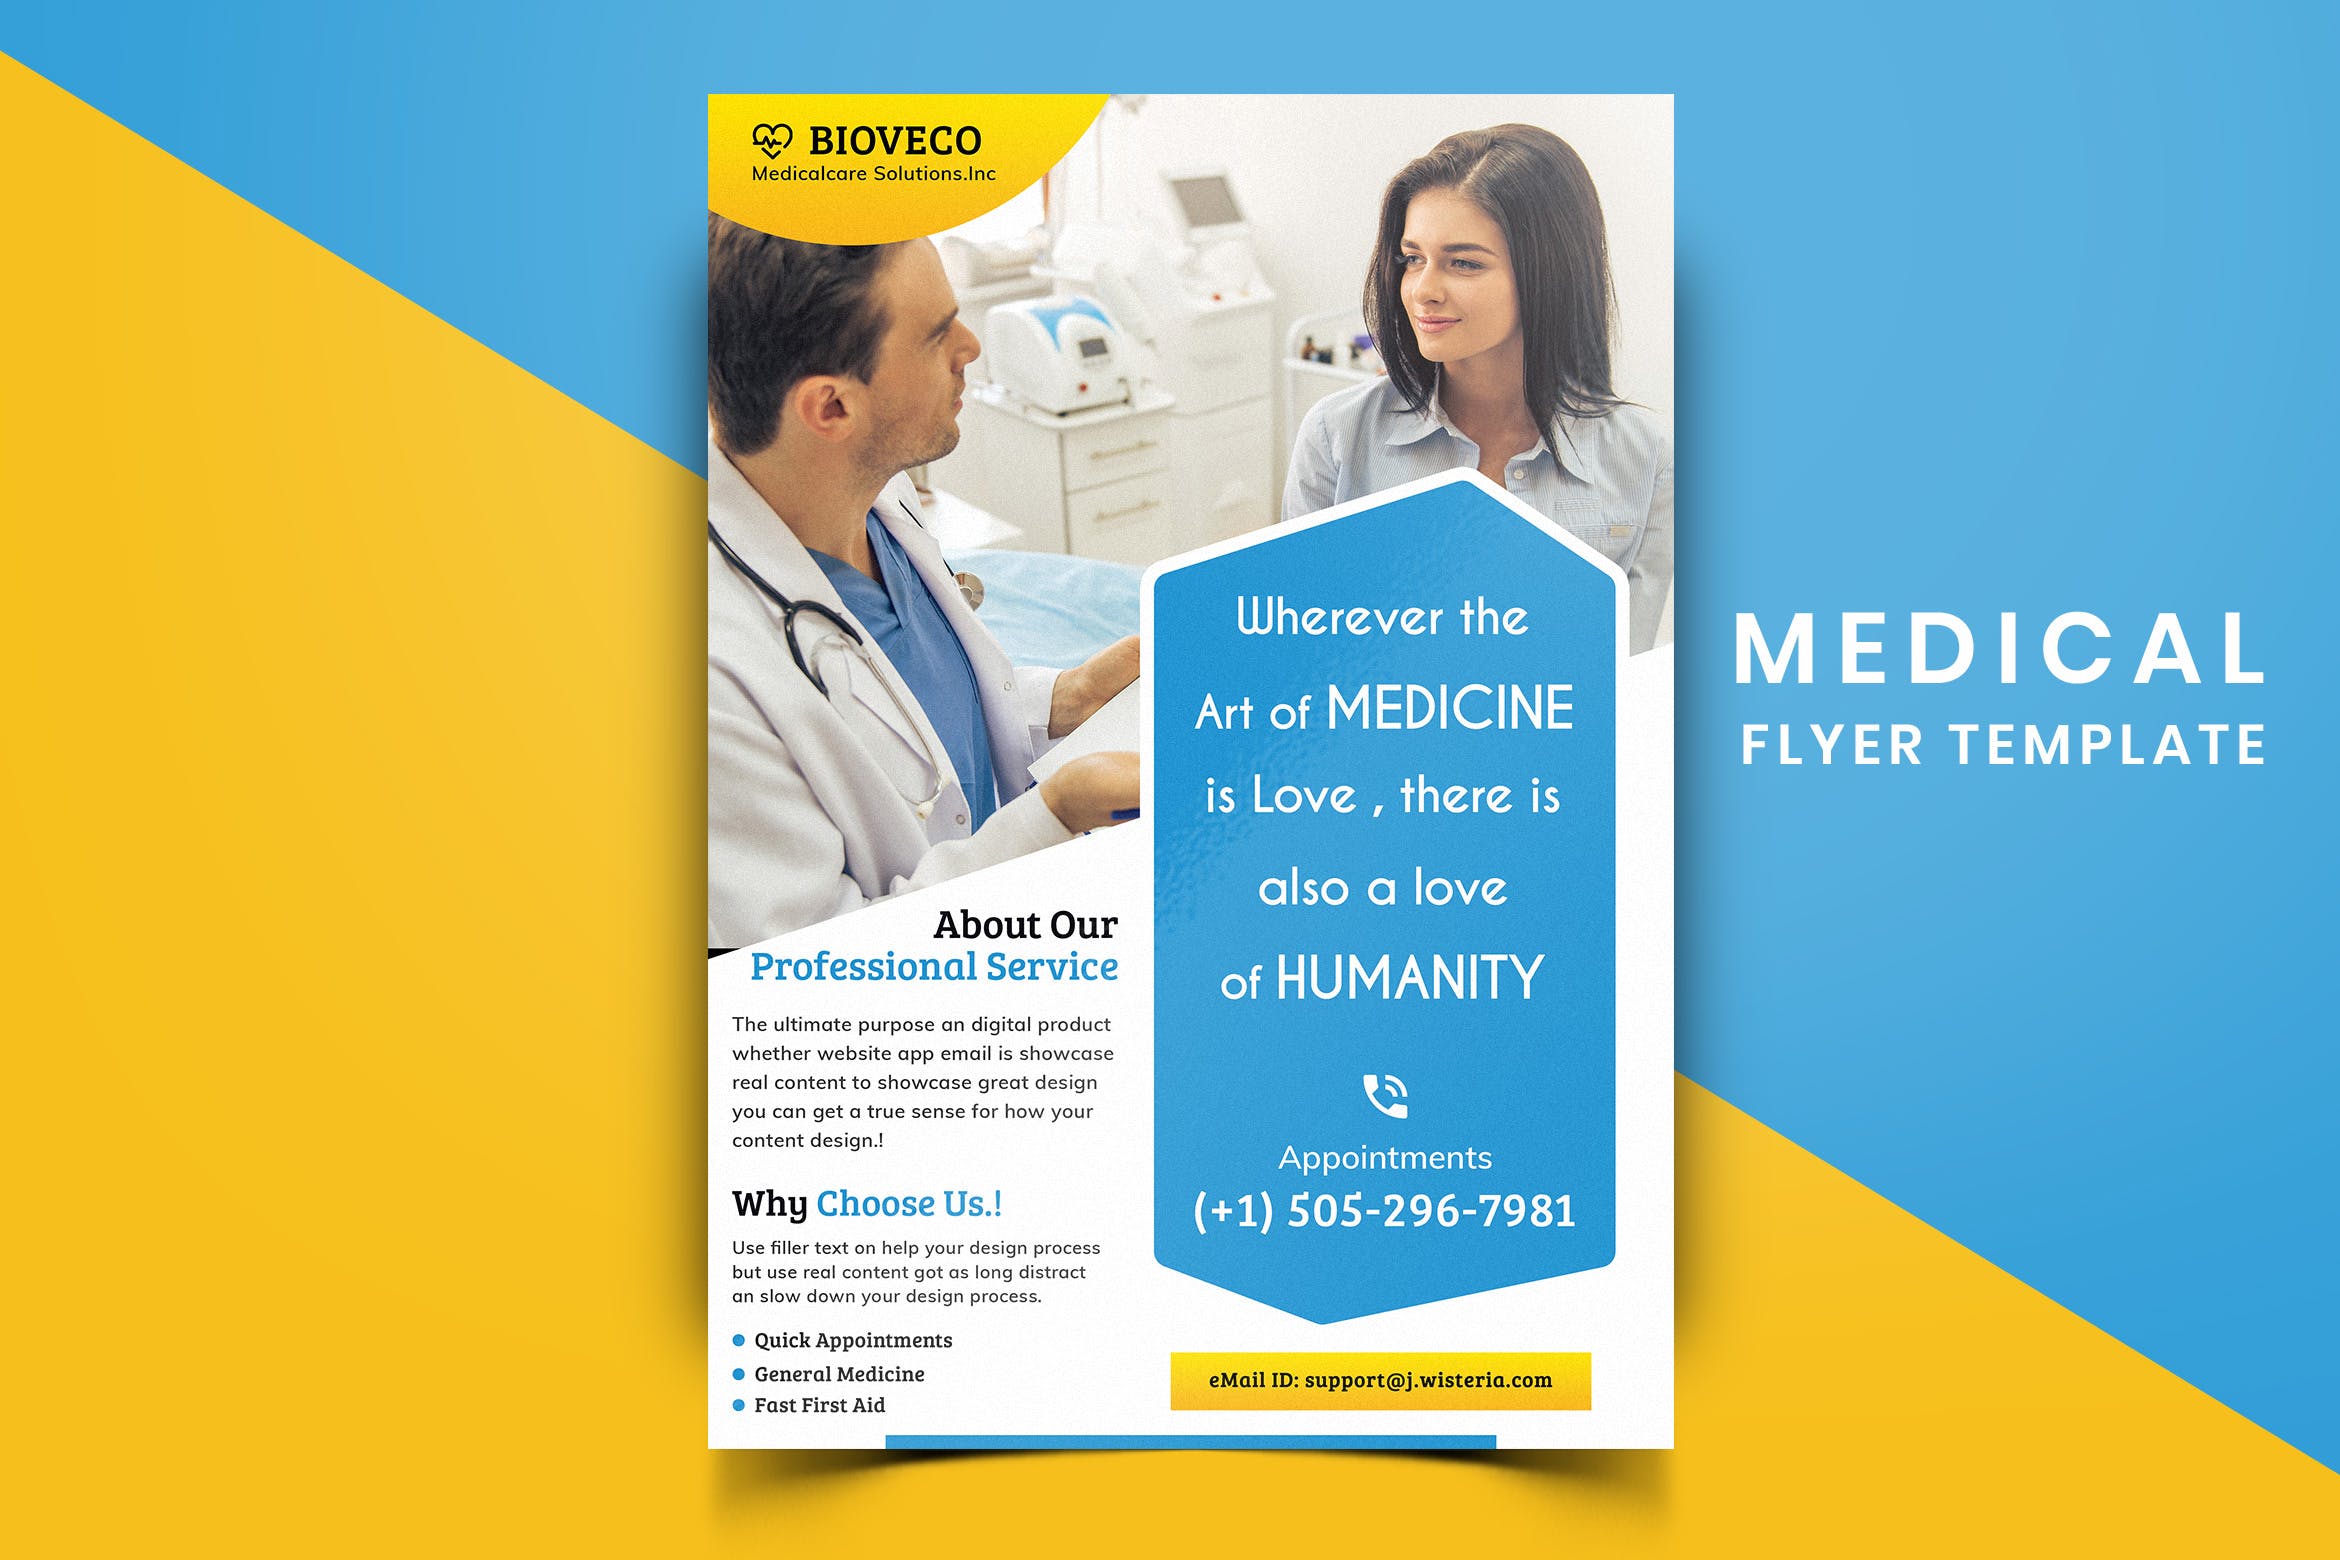 医院诊所医疗主题宣传单排版设计模板v01 Medical Flyer Template-01插图